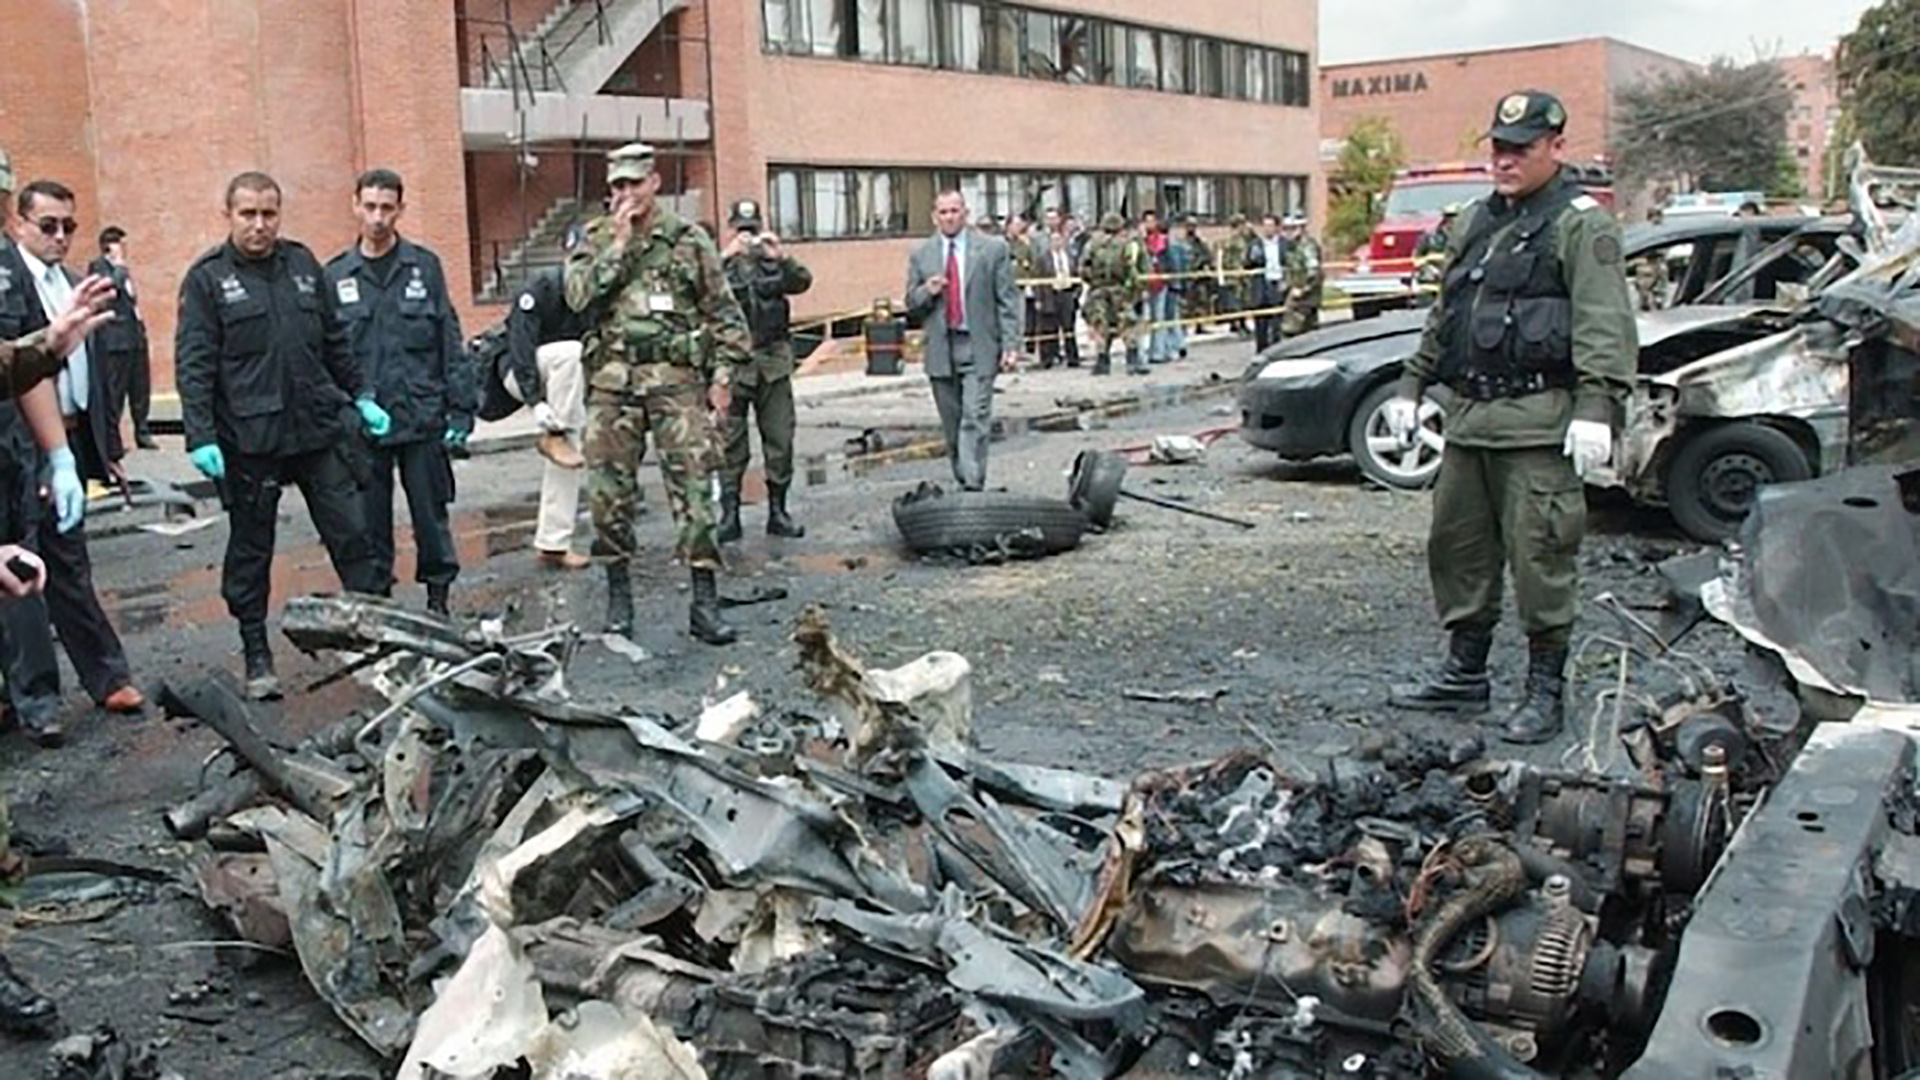 El carro comba con 80 kilos de explosivo de pentolita dejó 21 muertos, entre ellos el terrorista que ingresó el vehículo a la escuela policial, y 68 heridos.